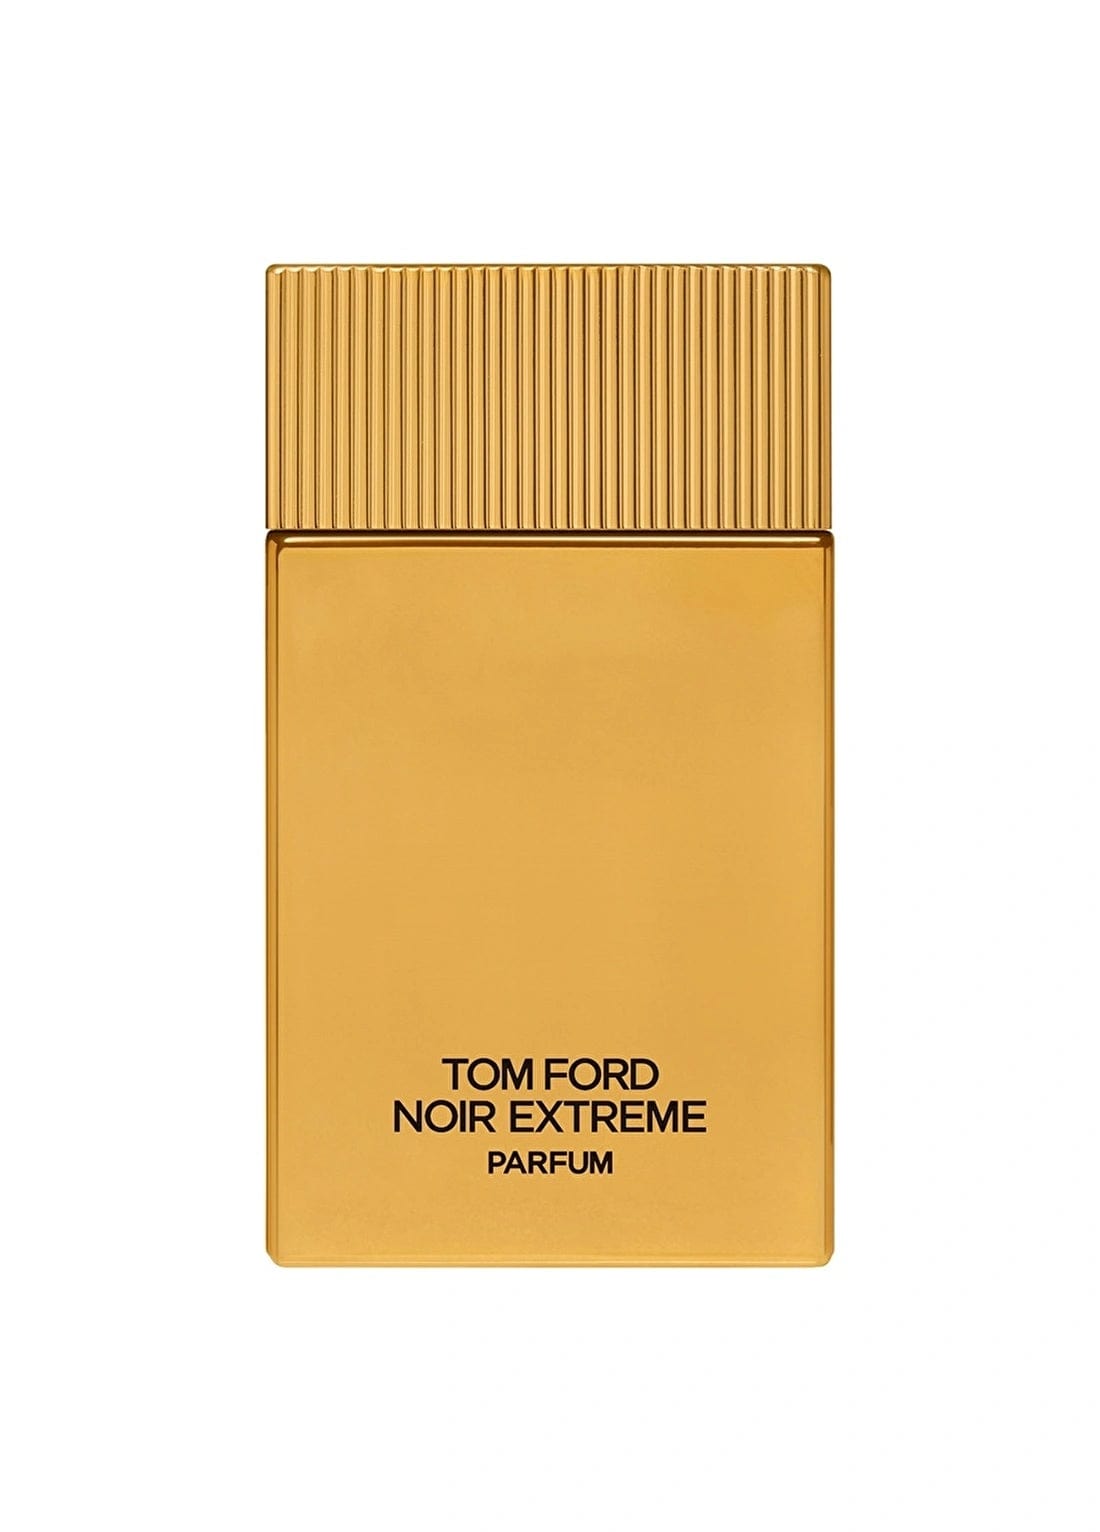 Tom Ford Noir Extreme Perfume 100 Ml / 3.3 Fl. Oz. Tom Ford